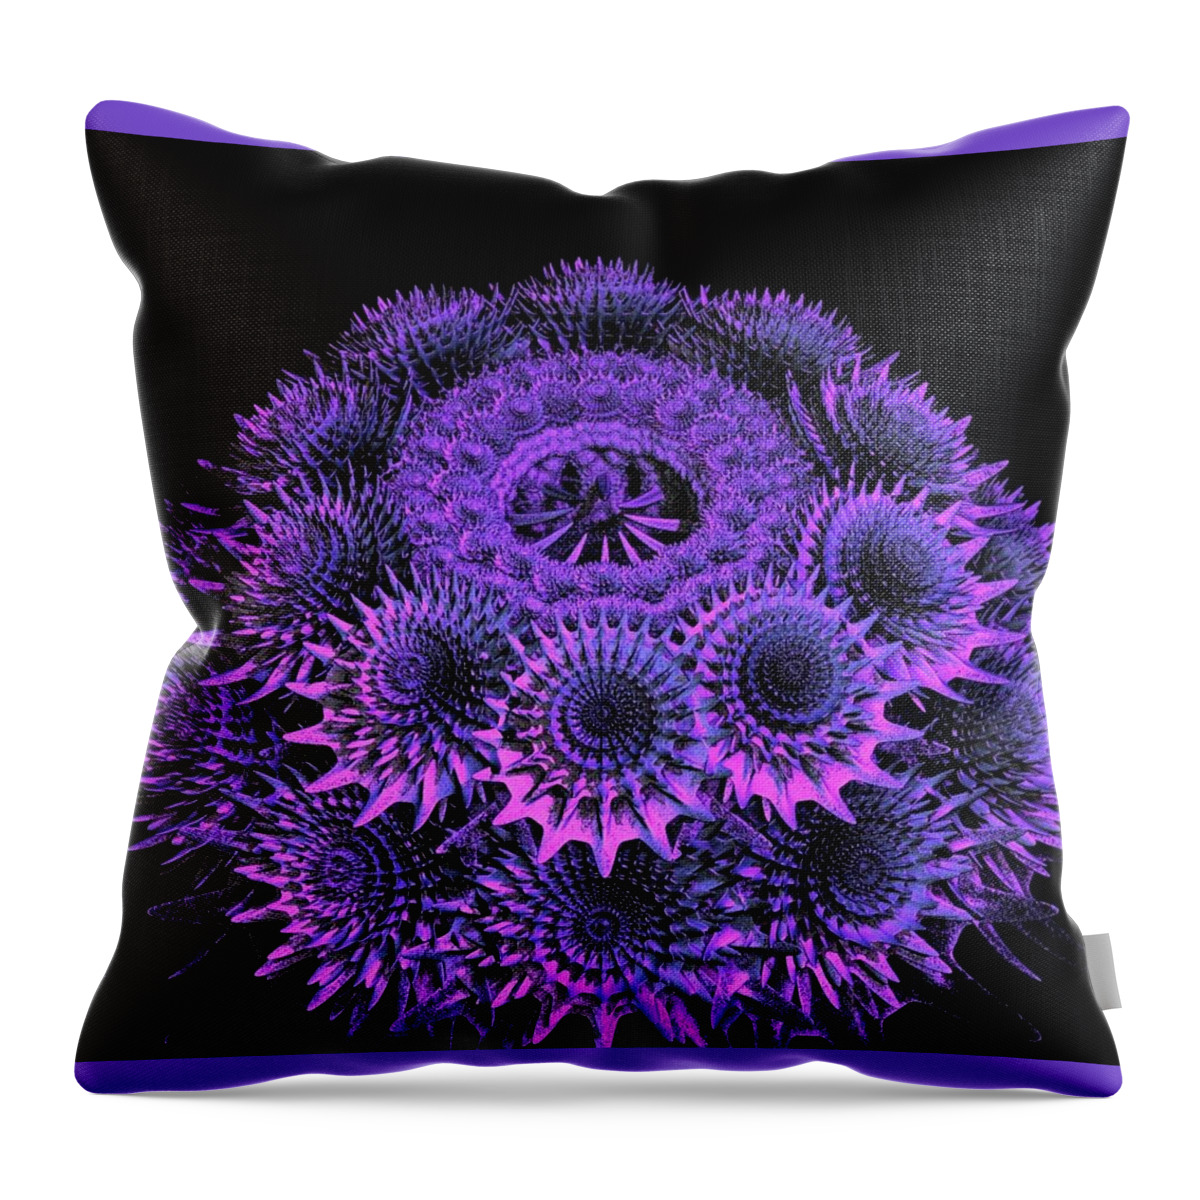 Urchin Throw Pillow featuring the digital art Sea Urchin by Julie Grace